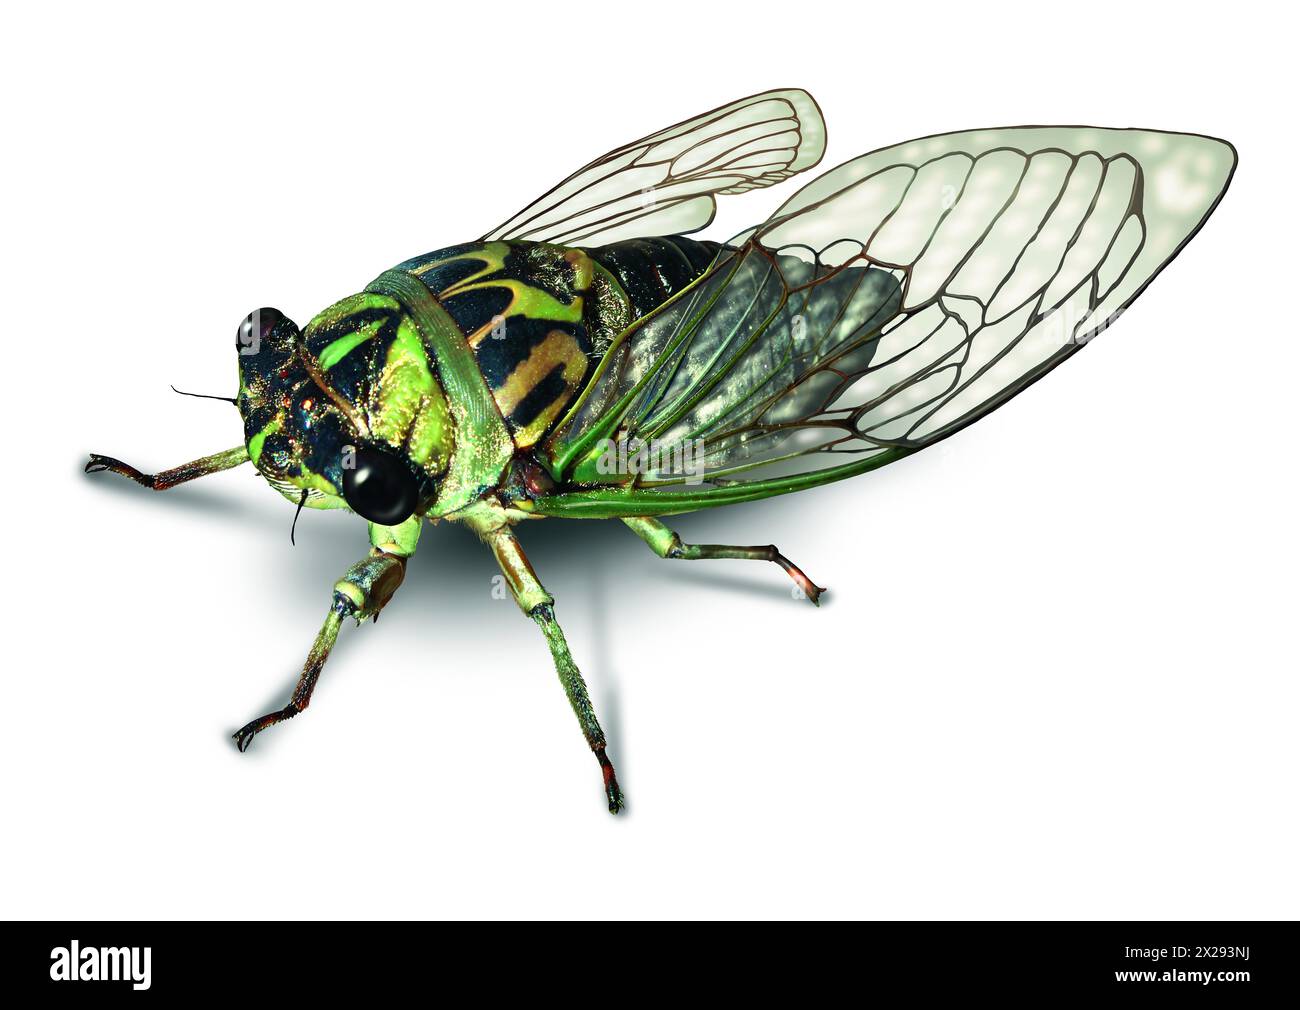 Cicada ou Cicala bug sur fond blanc après une longue hibernation souterraine comme symbole de la nature et de l'éducation entomologique pour les gros insectes. Banque D'Images